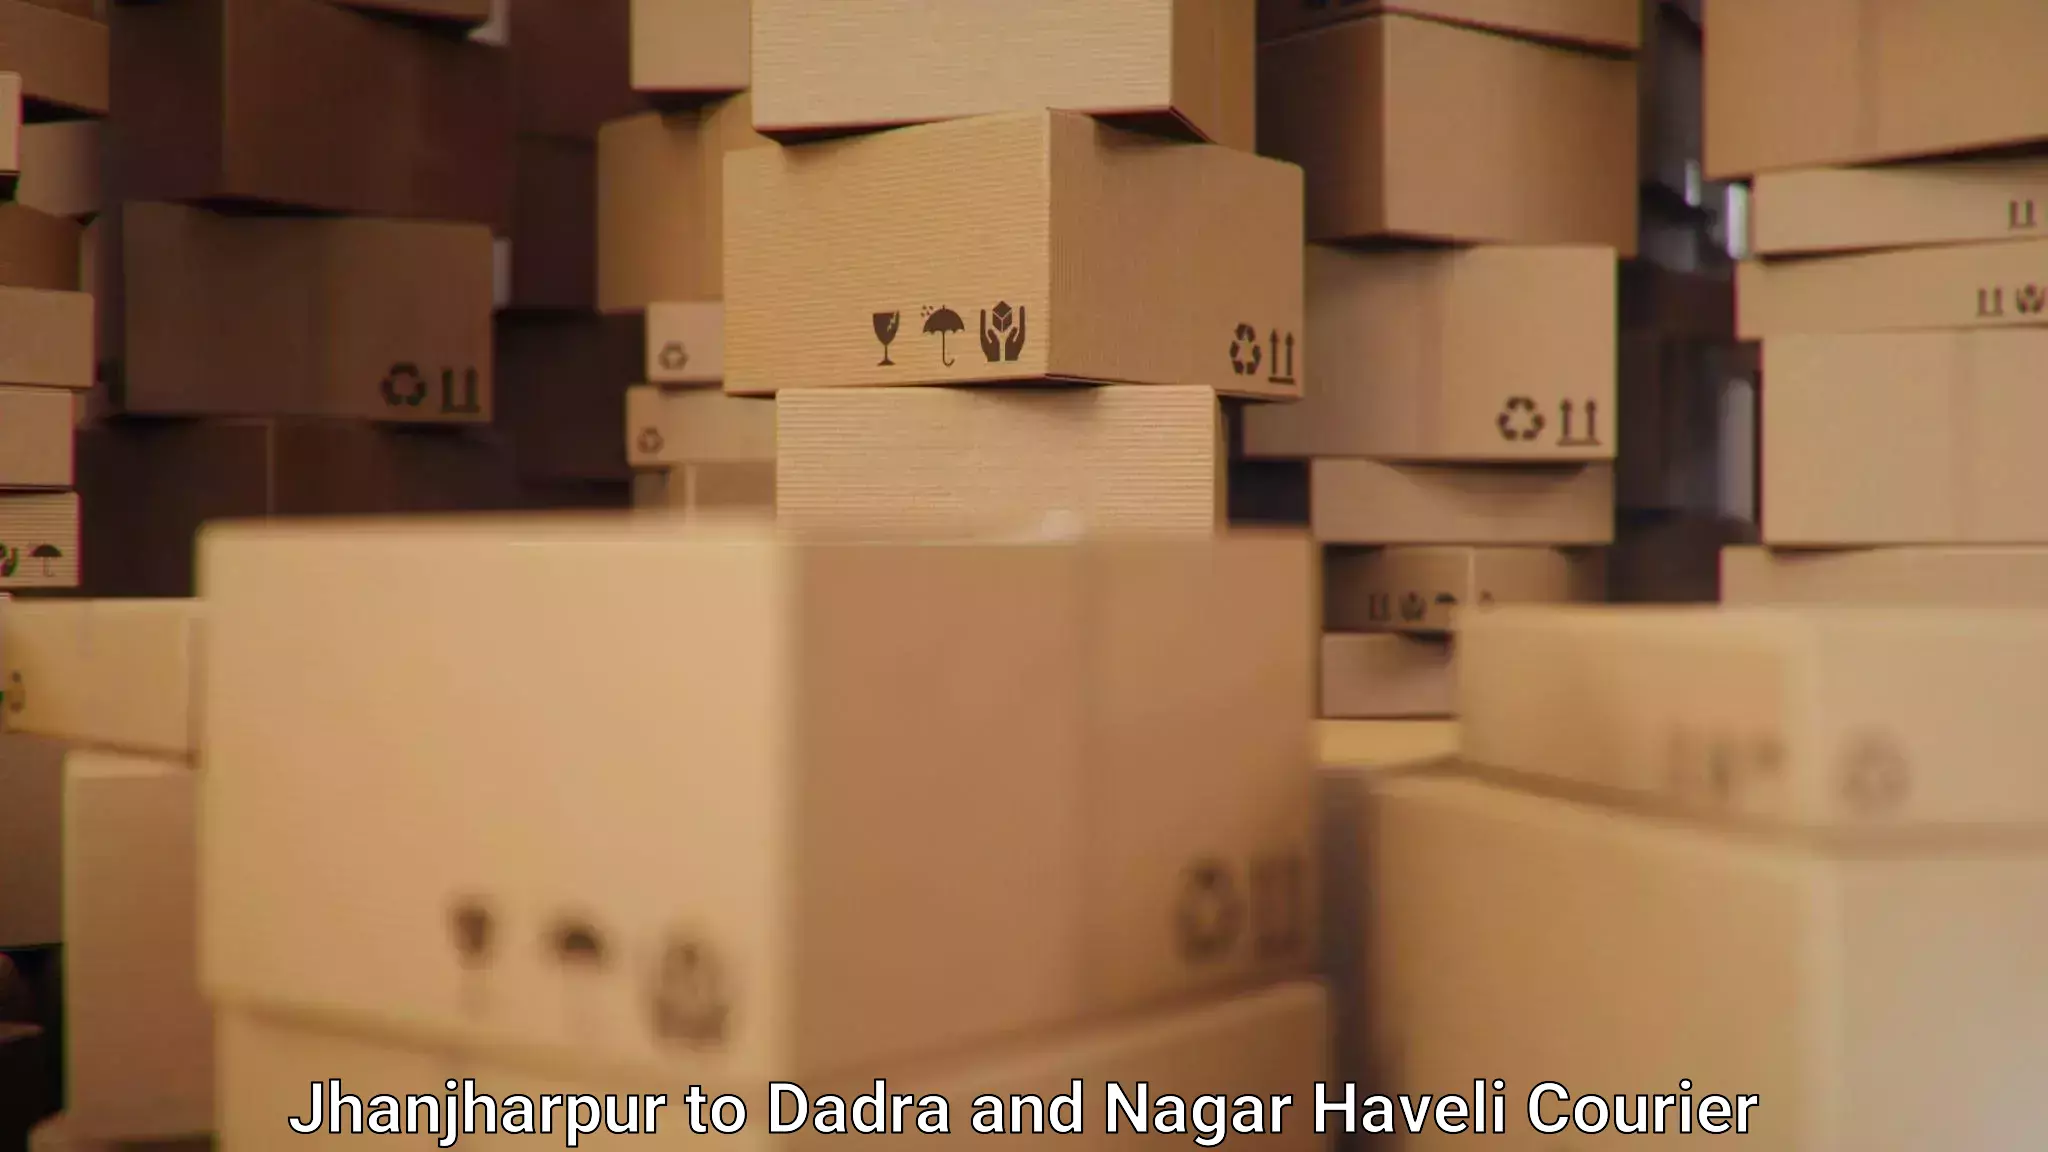 Logistics and distribution Jhanjharpur to Dadra and Nagar Haveli